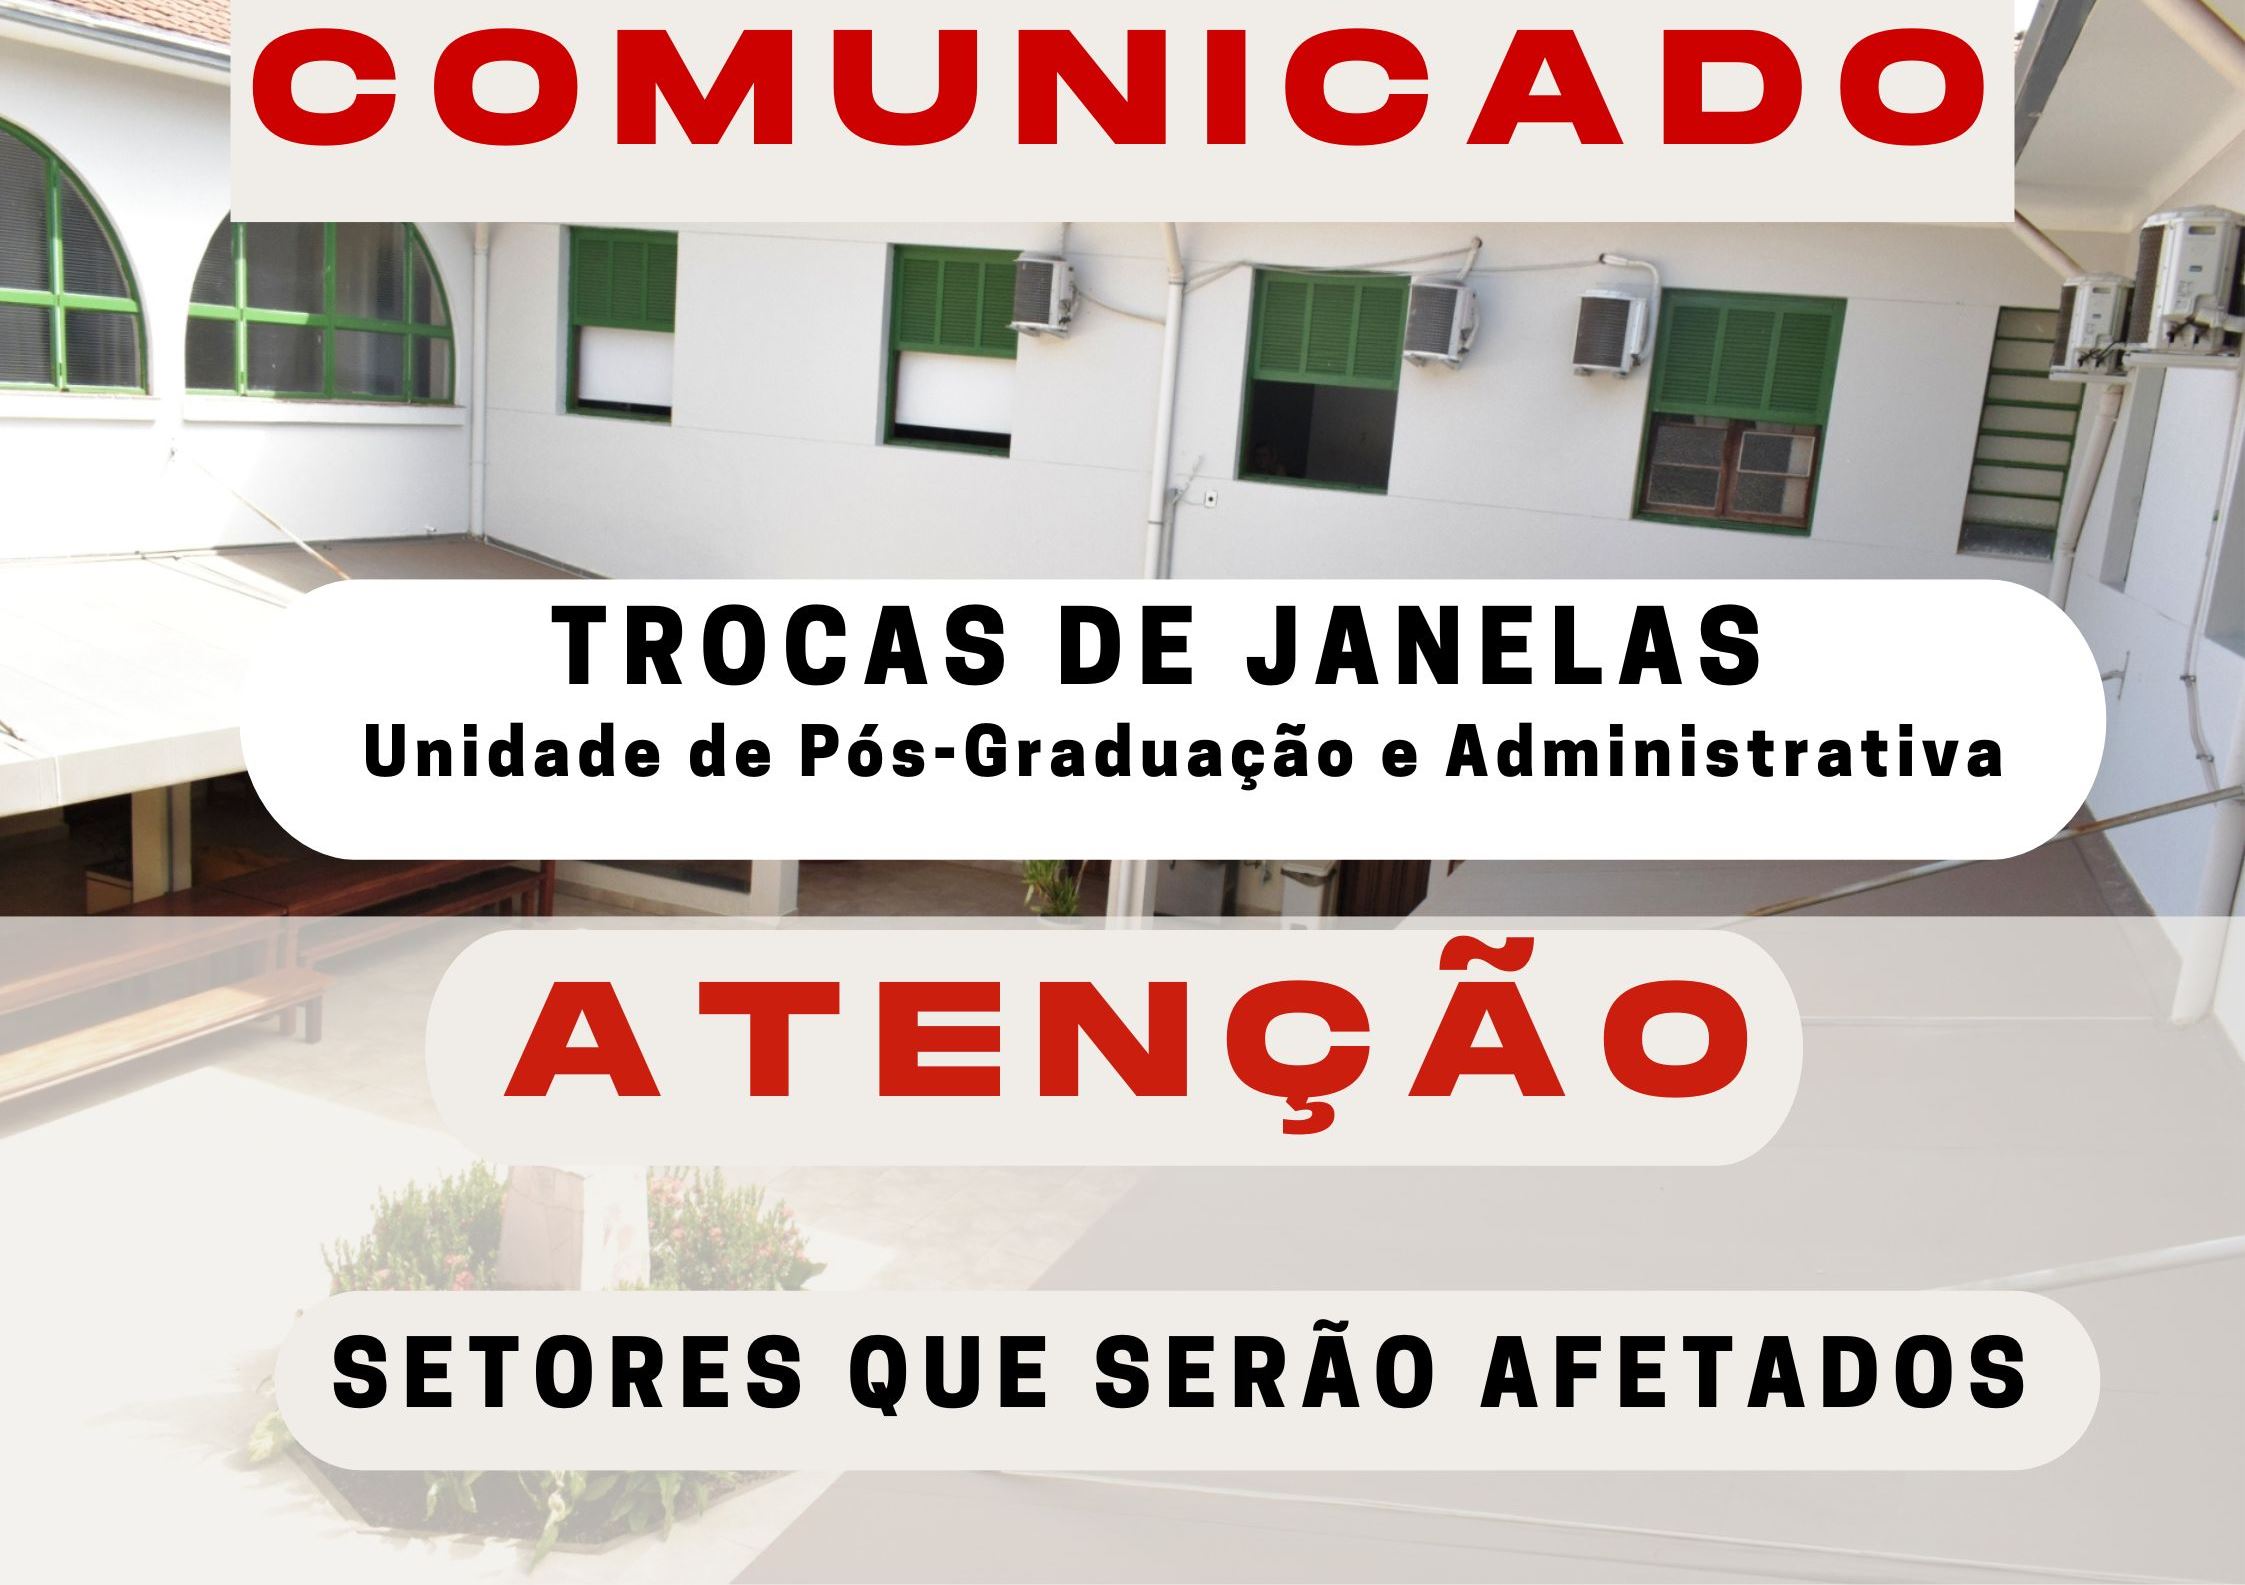 COMUNICADO TROCA DE JANELAS NA UNIDADE DE PÓS-GRADUAÇÃO E ADMINISTRATIVA